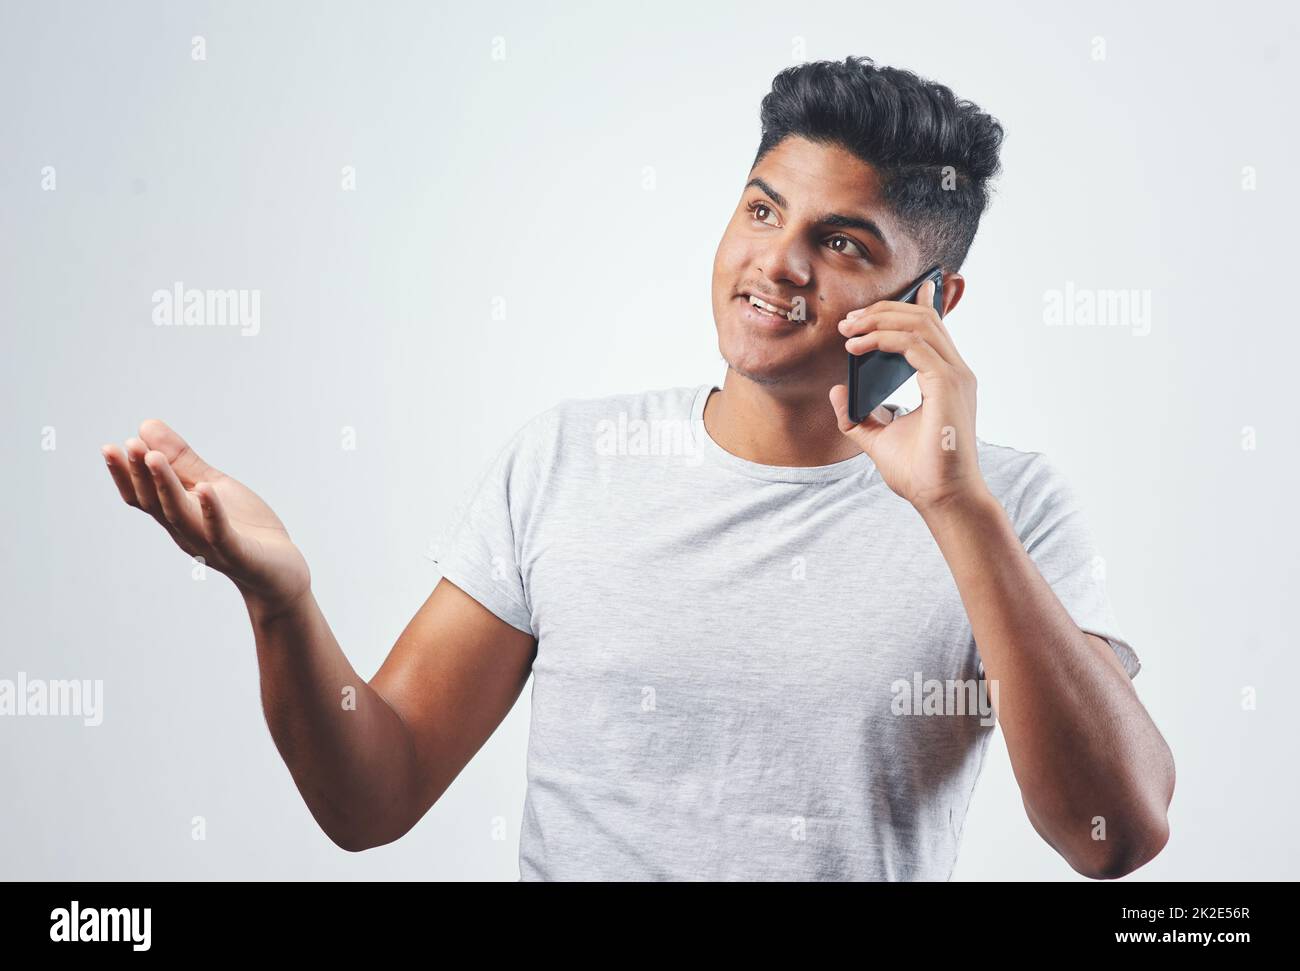 Lernen wir uns kennen. Studioaufnahme eines jungen Mannes, der auf seinem Handy spricht, während er vor einem weißen Hintergrund steht. Stockfoto